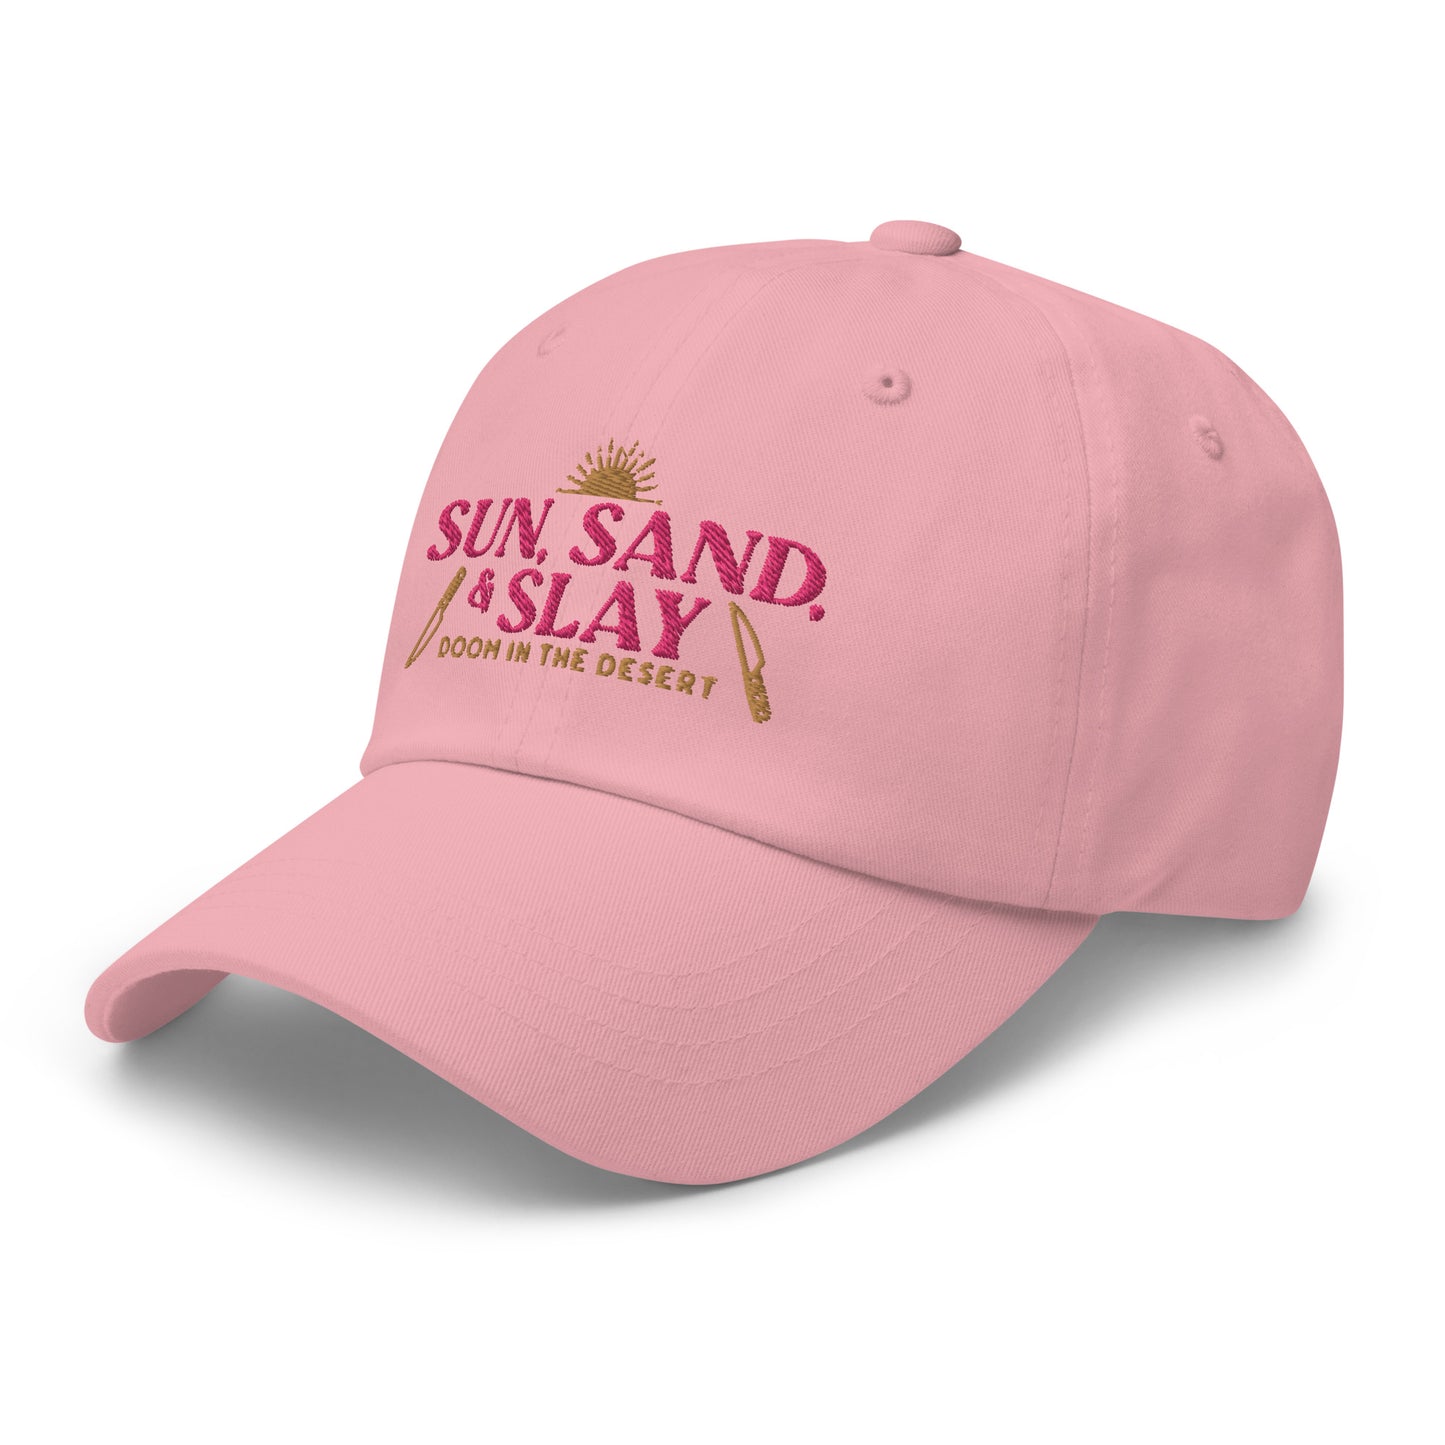 Sun Sand & Slay